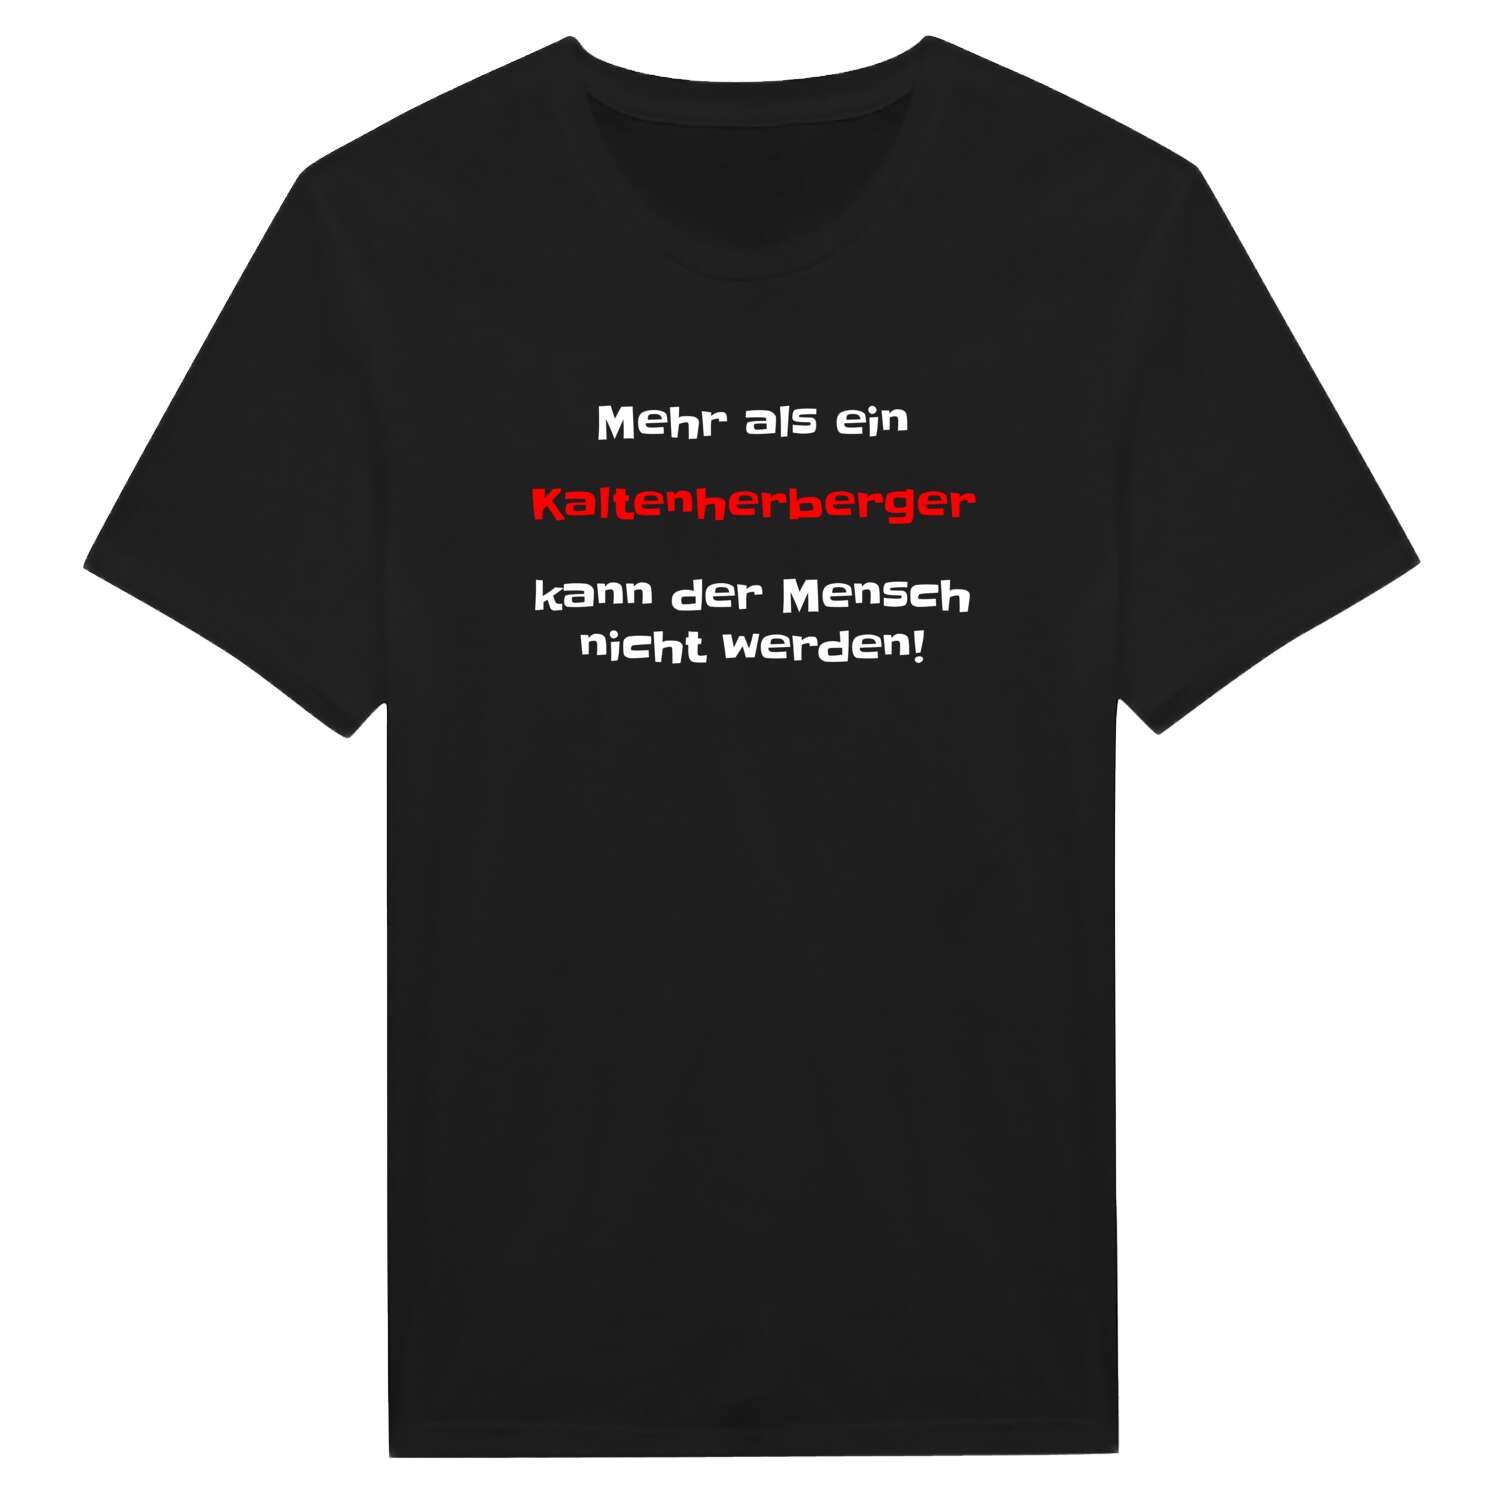 Kaltenherberg T-Shirt »Mehr als ein«